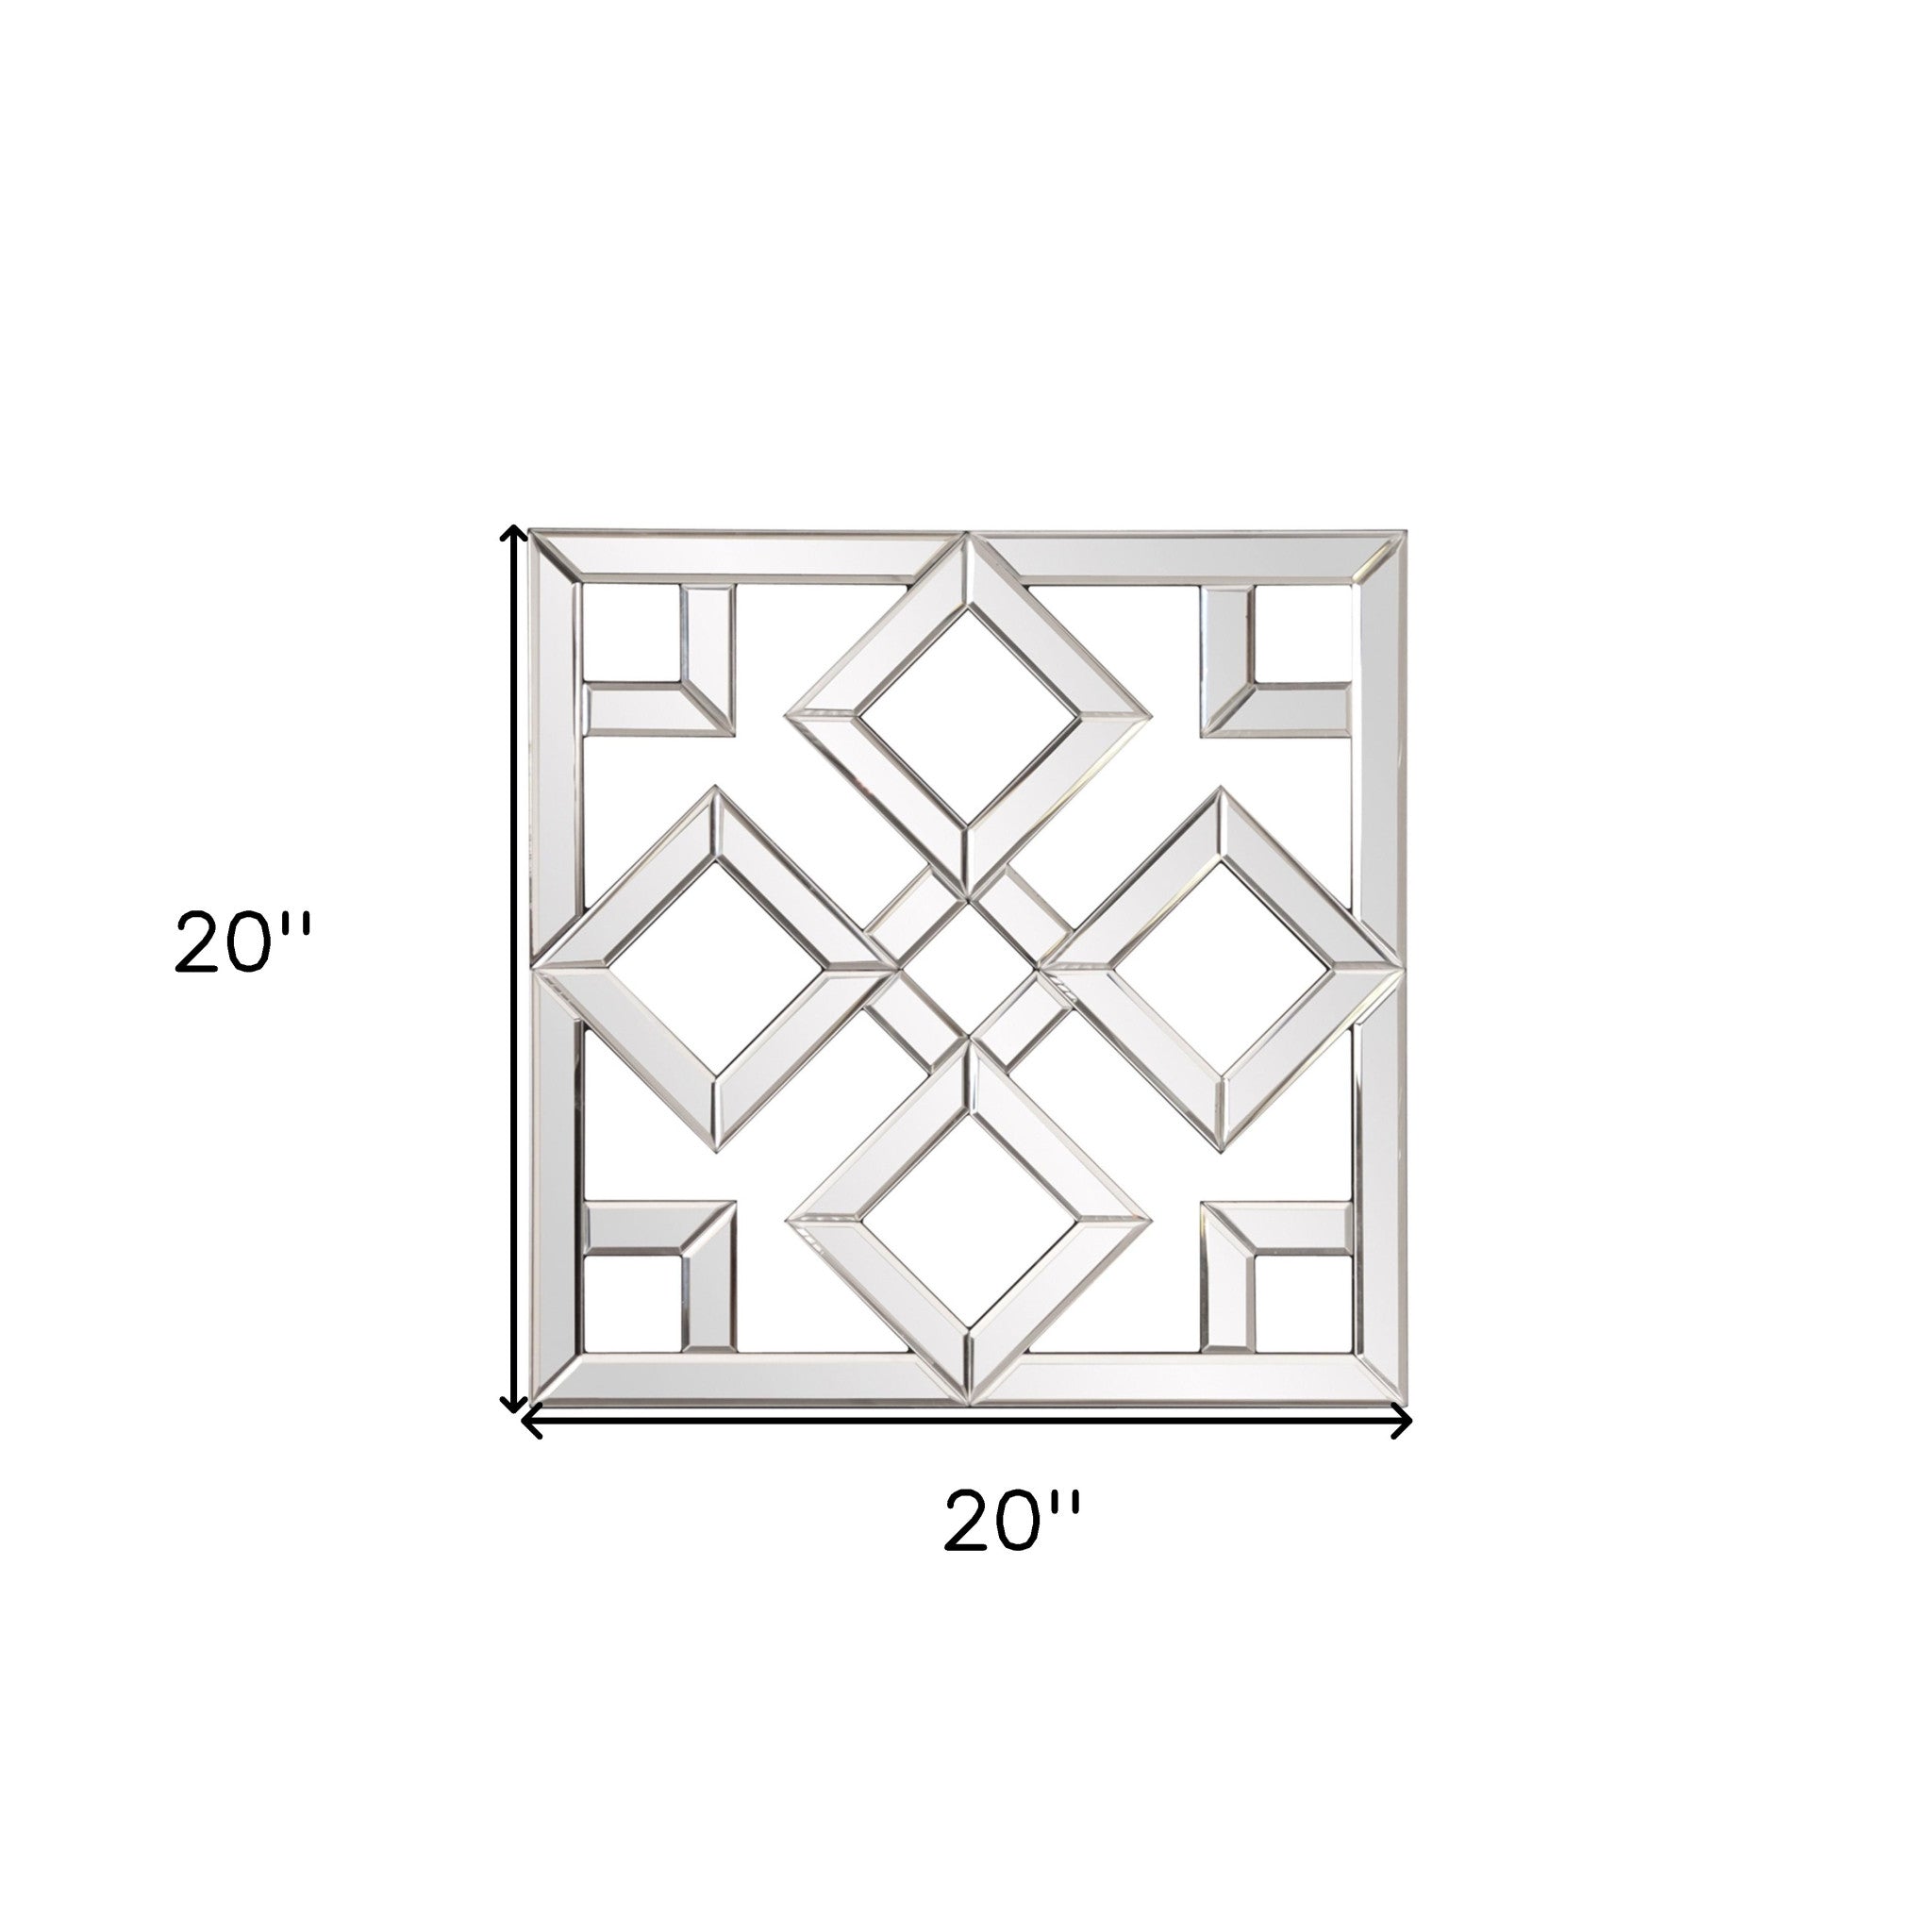 Interlocking Mirrored Squares With Lattice Design